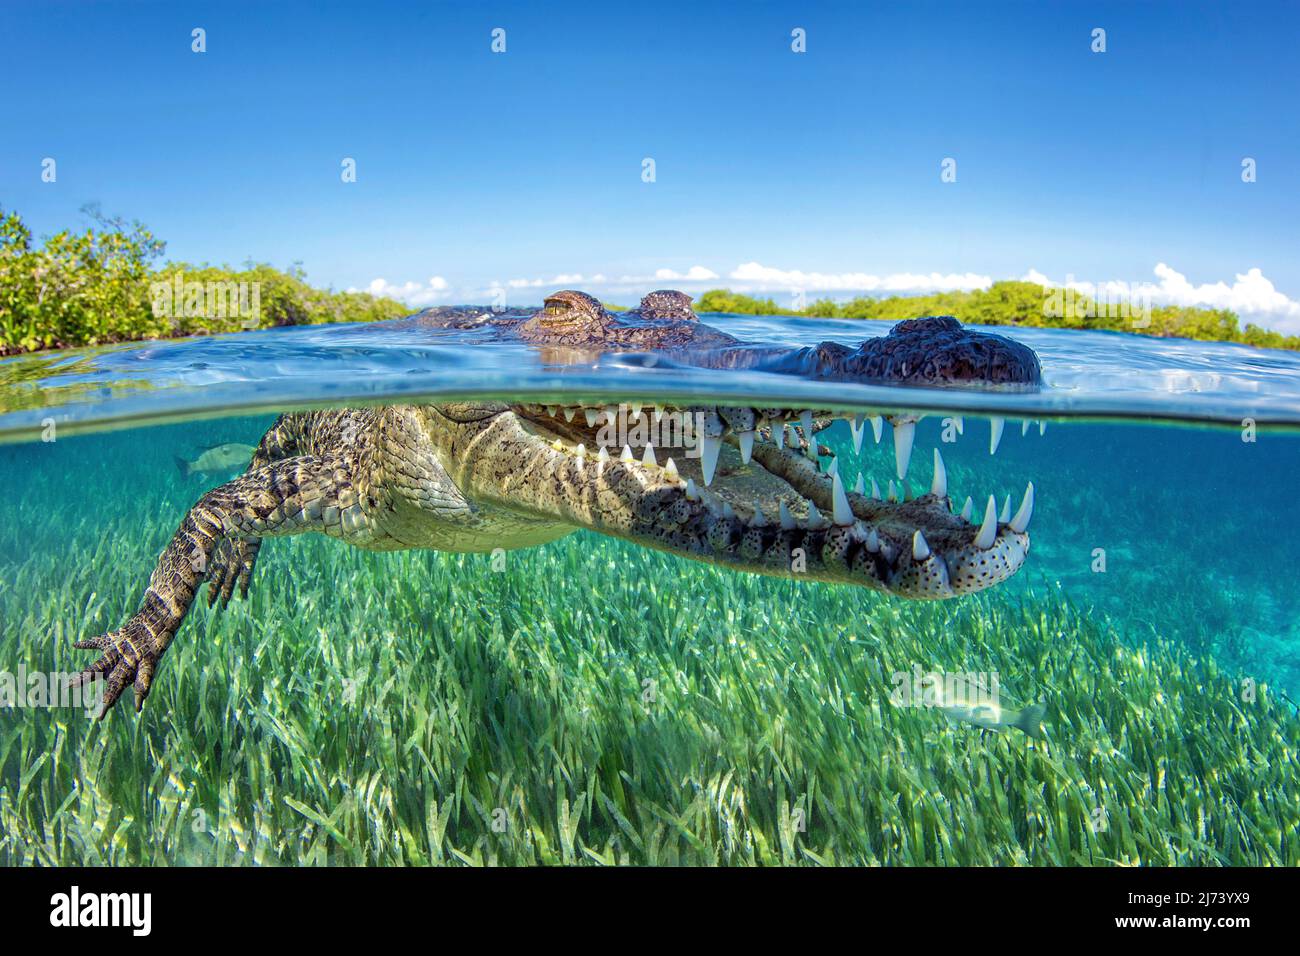 American crocodile (Crocodylus acutus), split image, over under, Jardines de la Reina, Cuba, Caribbean sea, Caribbean Stock Photo